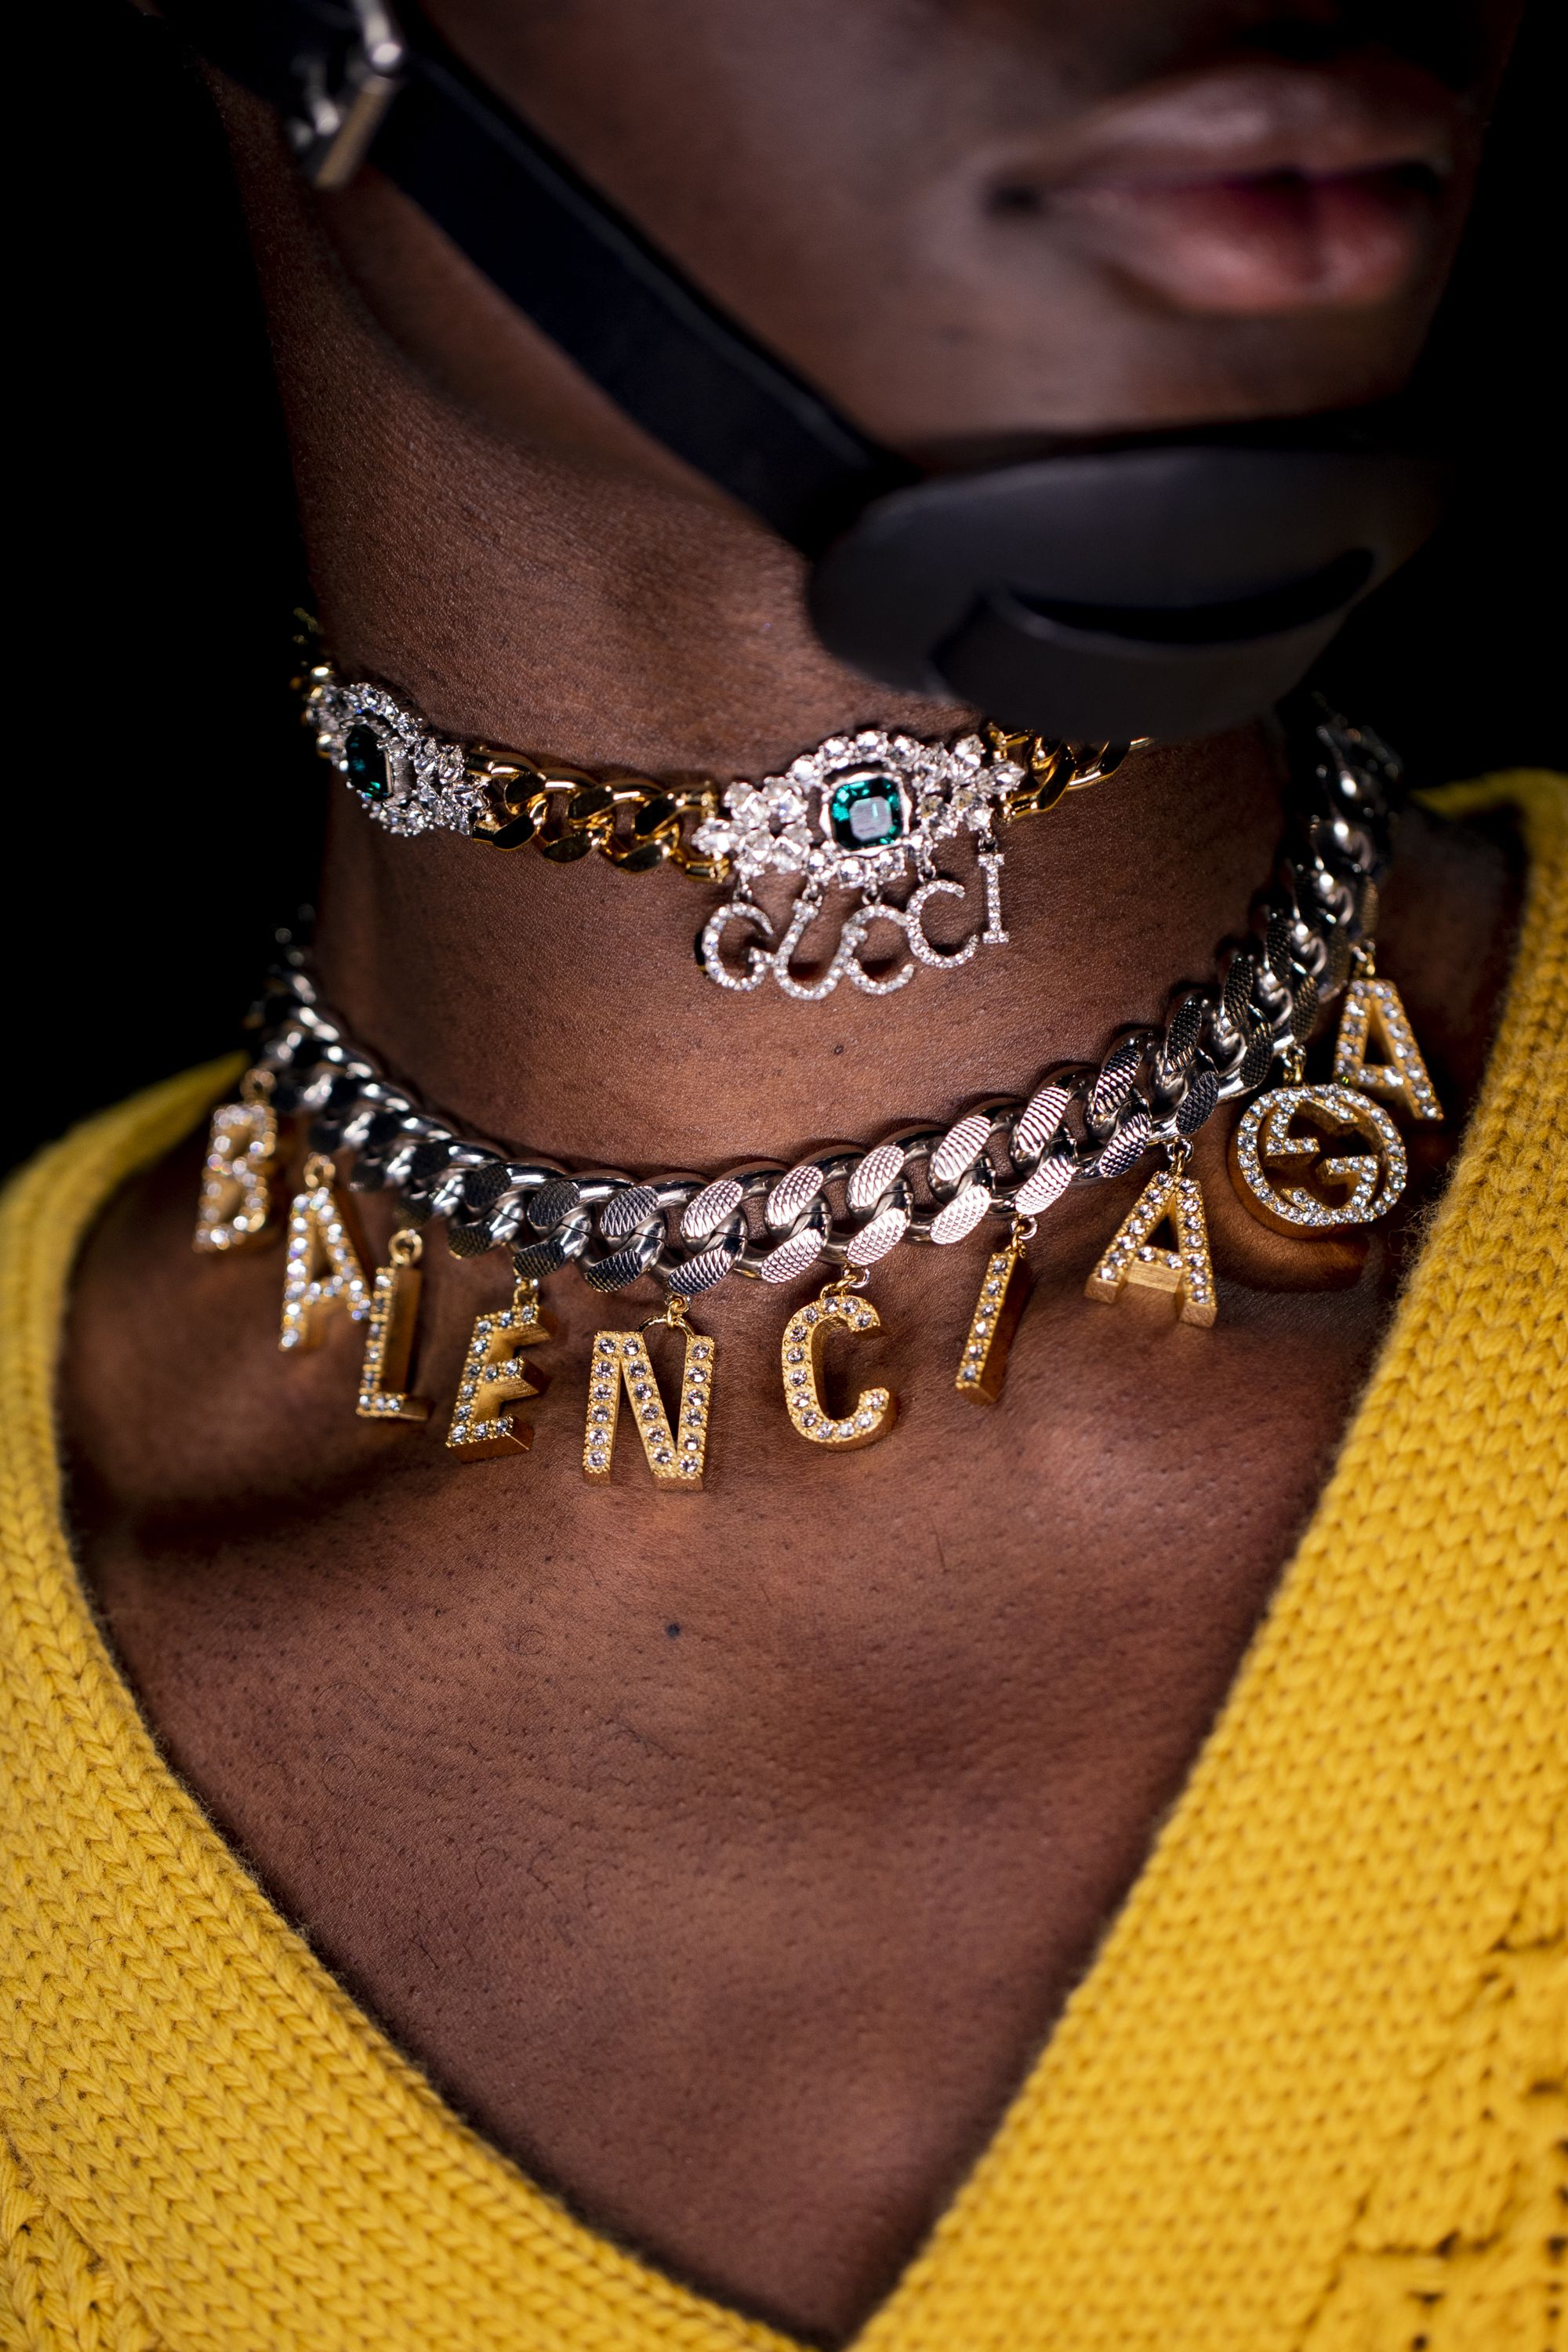 Gucci's Fall 2021 Aria Collection Includes A Gucci x Balenciaga